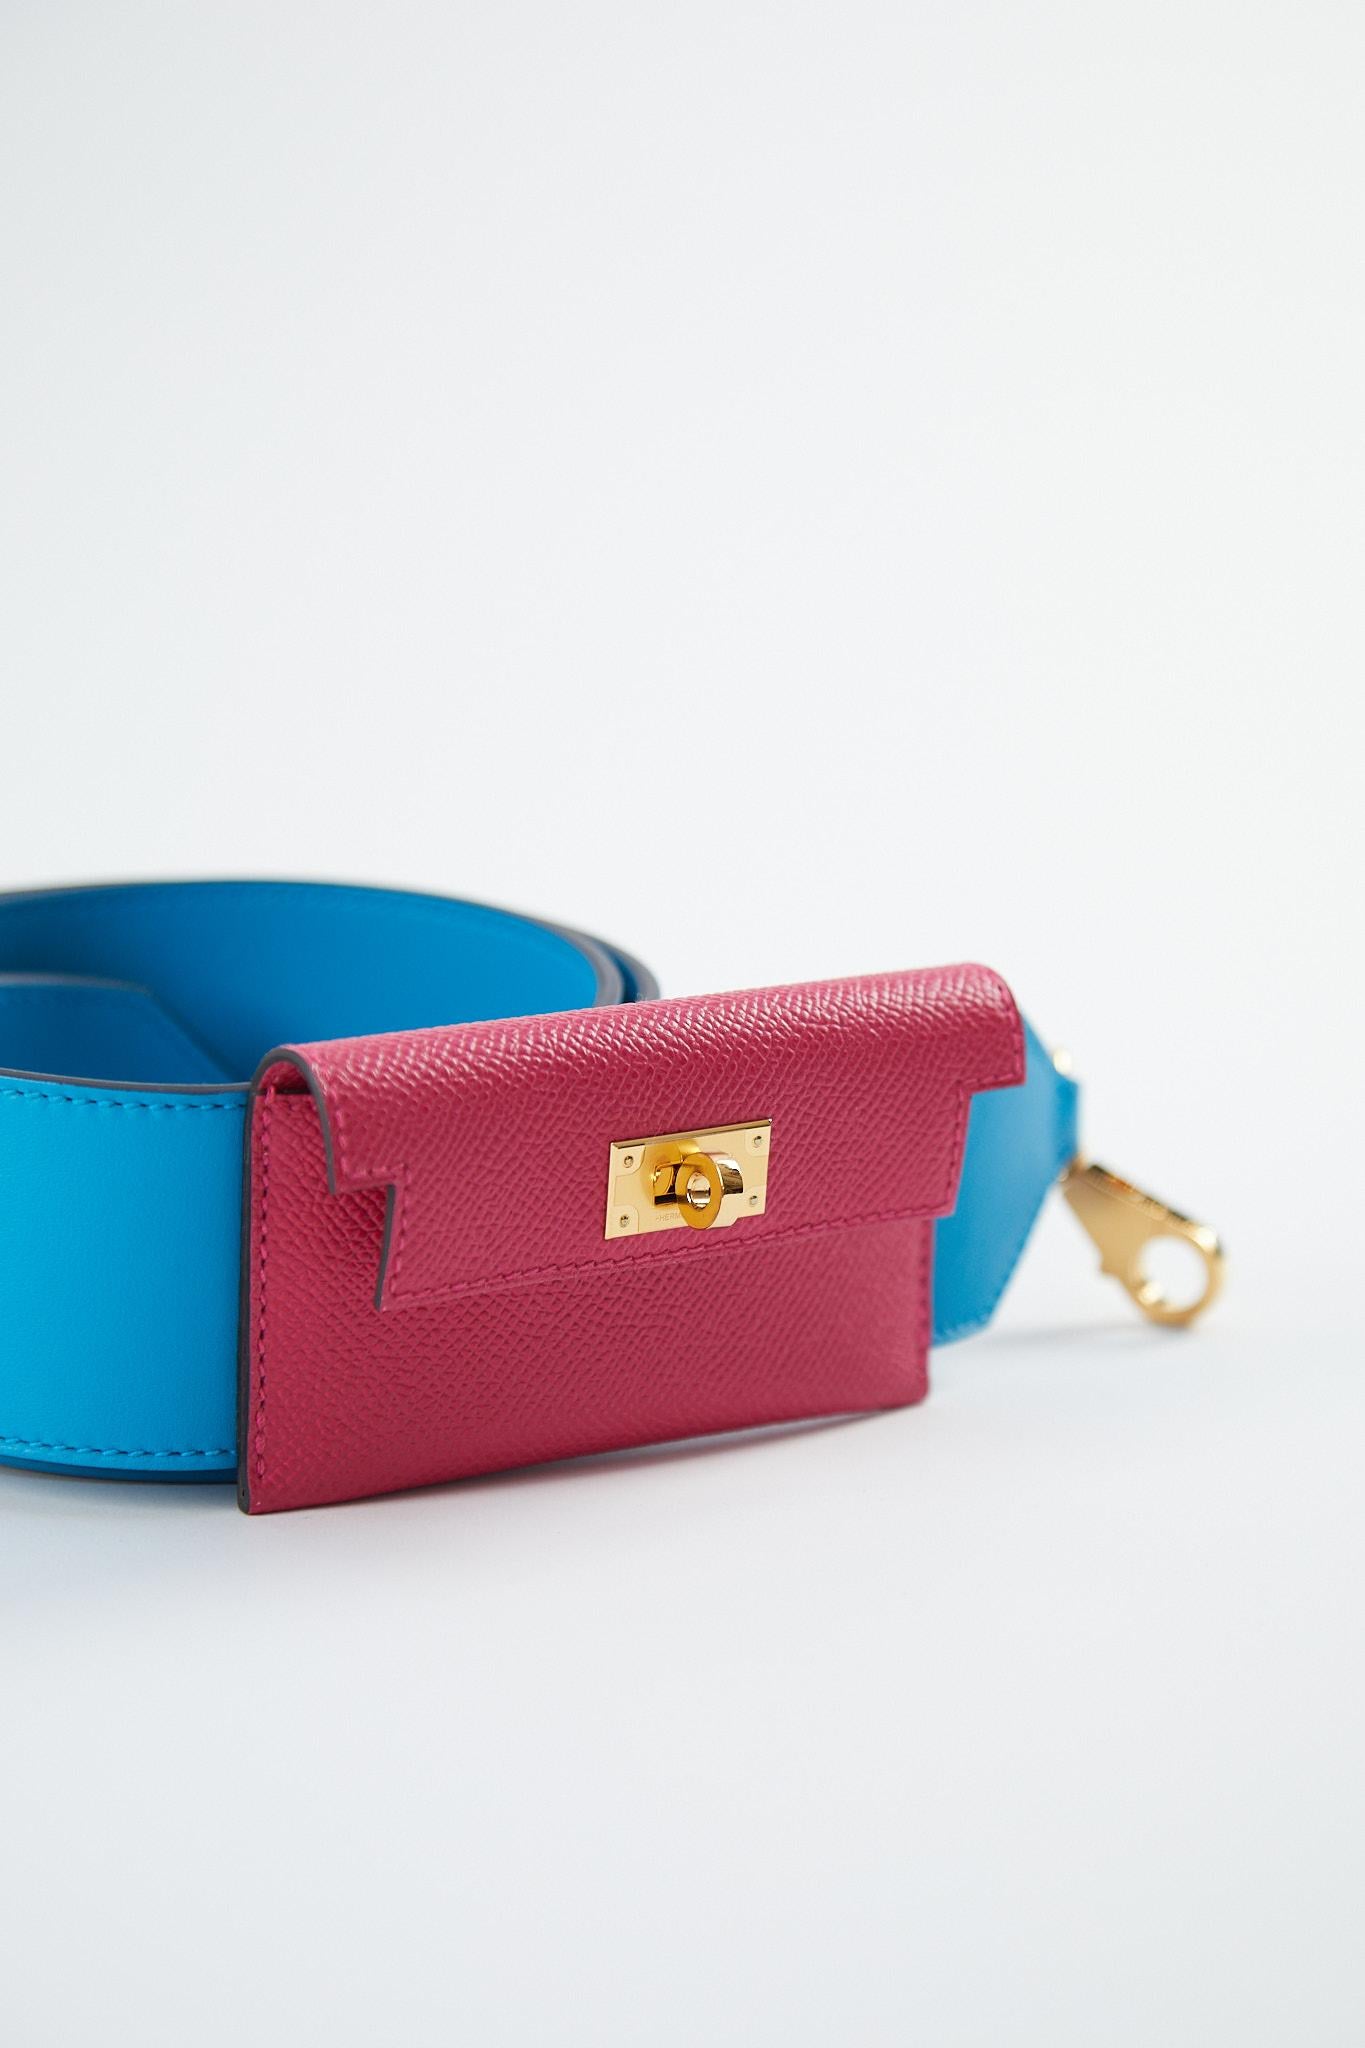 Hermès Kelly Pocket Strap 105cm en bleu Frida & Rose Mexico

Cuir d'Epsom et de Swift avec matériel doré

O Tampon / Pas de reçu

Accompagné de : Boîte, sac à poussière et ruban Hermès.

Mesures : L 42